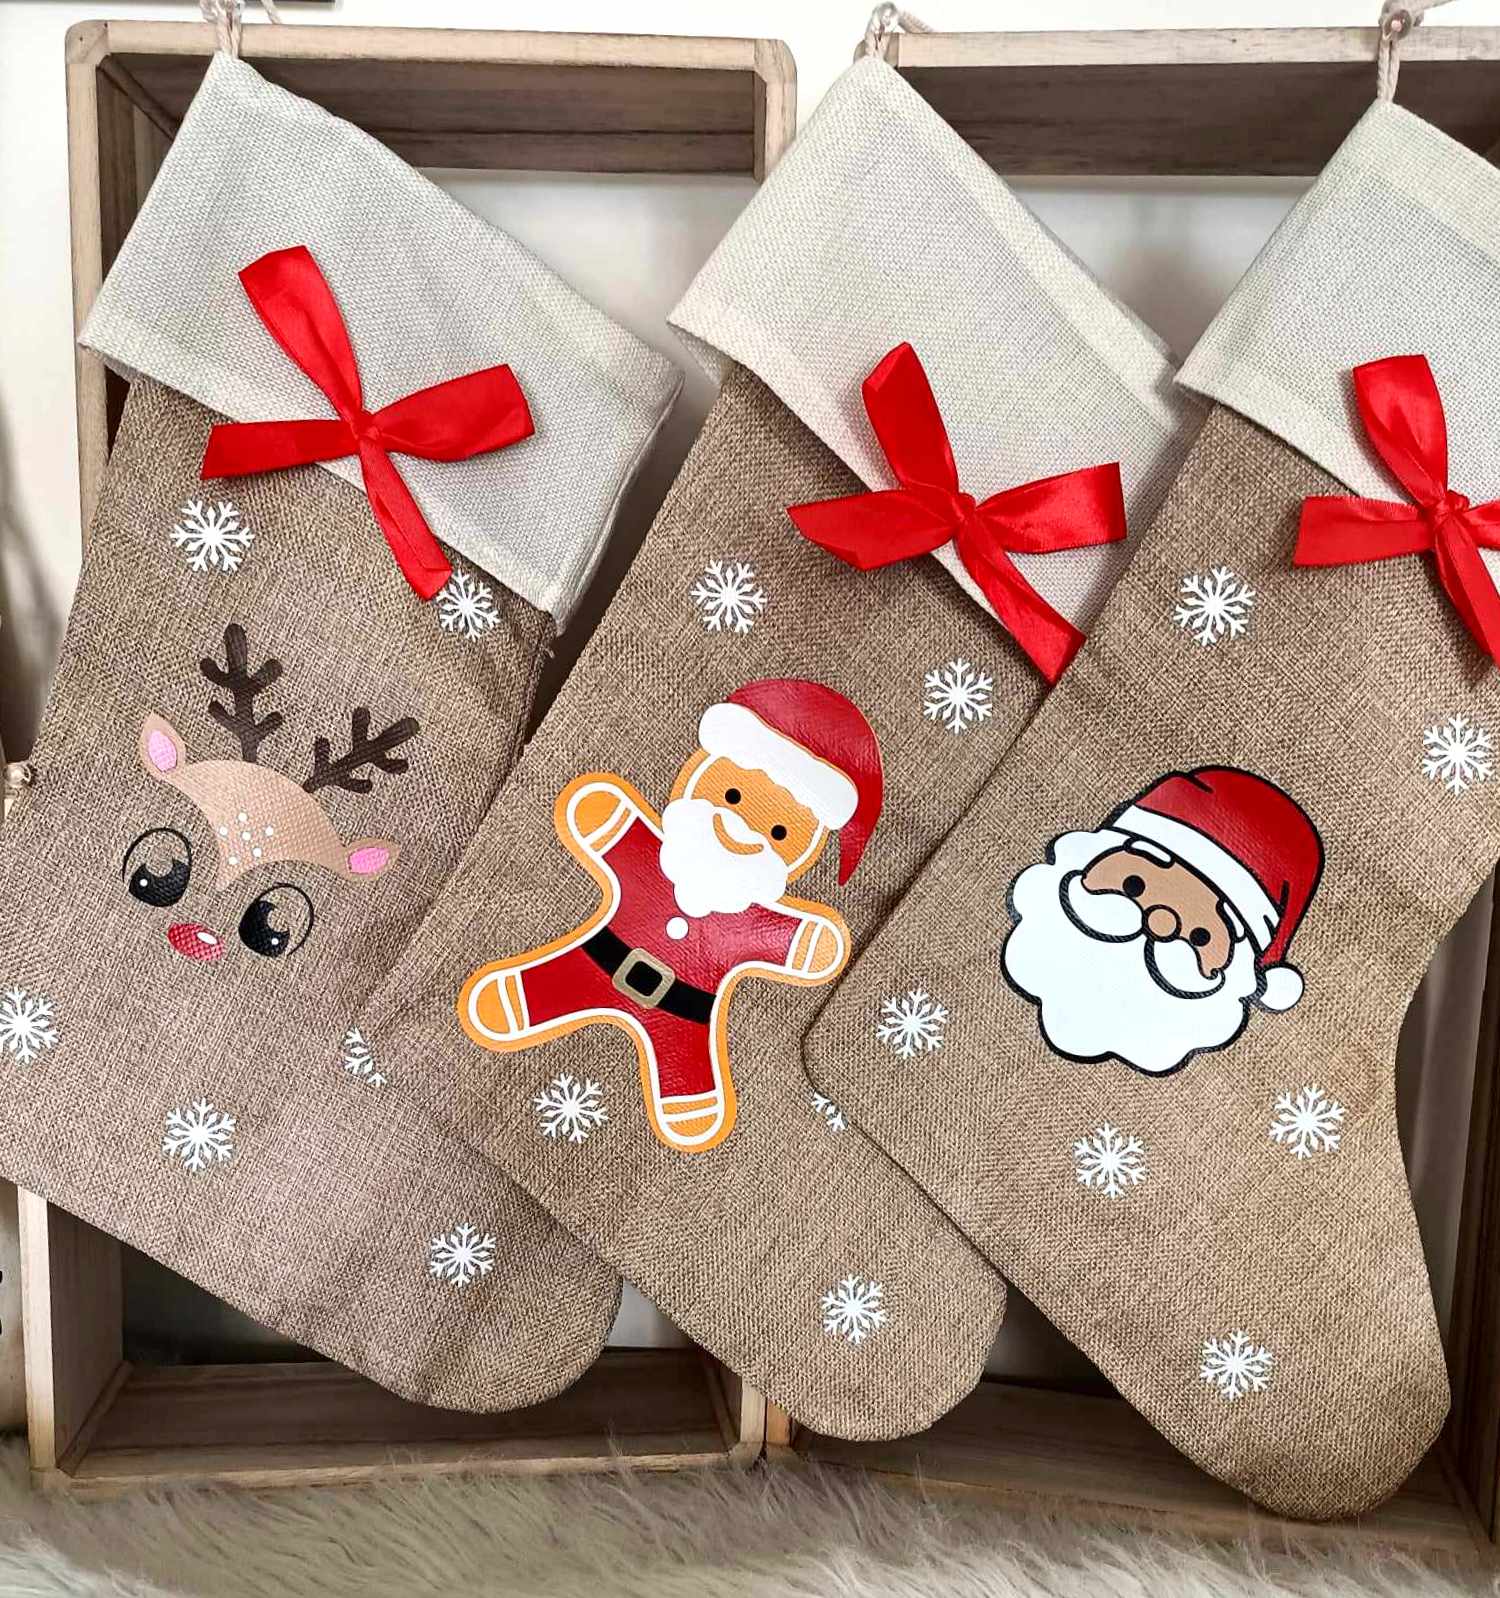 Faites entrer la magie de Noël  dans votre foyer avec ces chaussettes personnalisées.  Les chaussettes de Noël sont fabriquées en coton et lin, solides et durables, ces chaussettes de Noël seront un merveilleux souvenir pour Noël